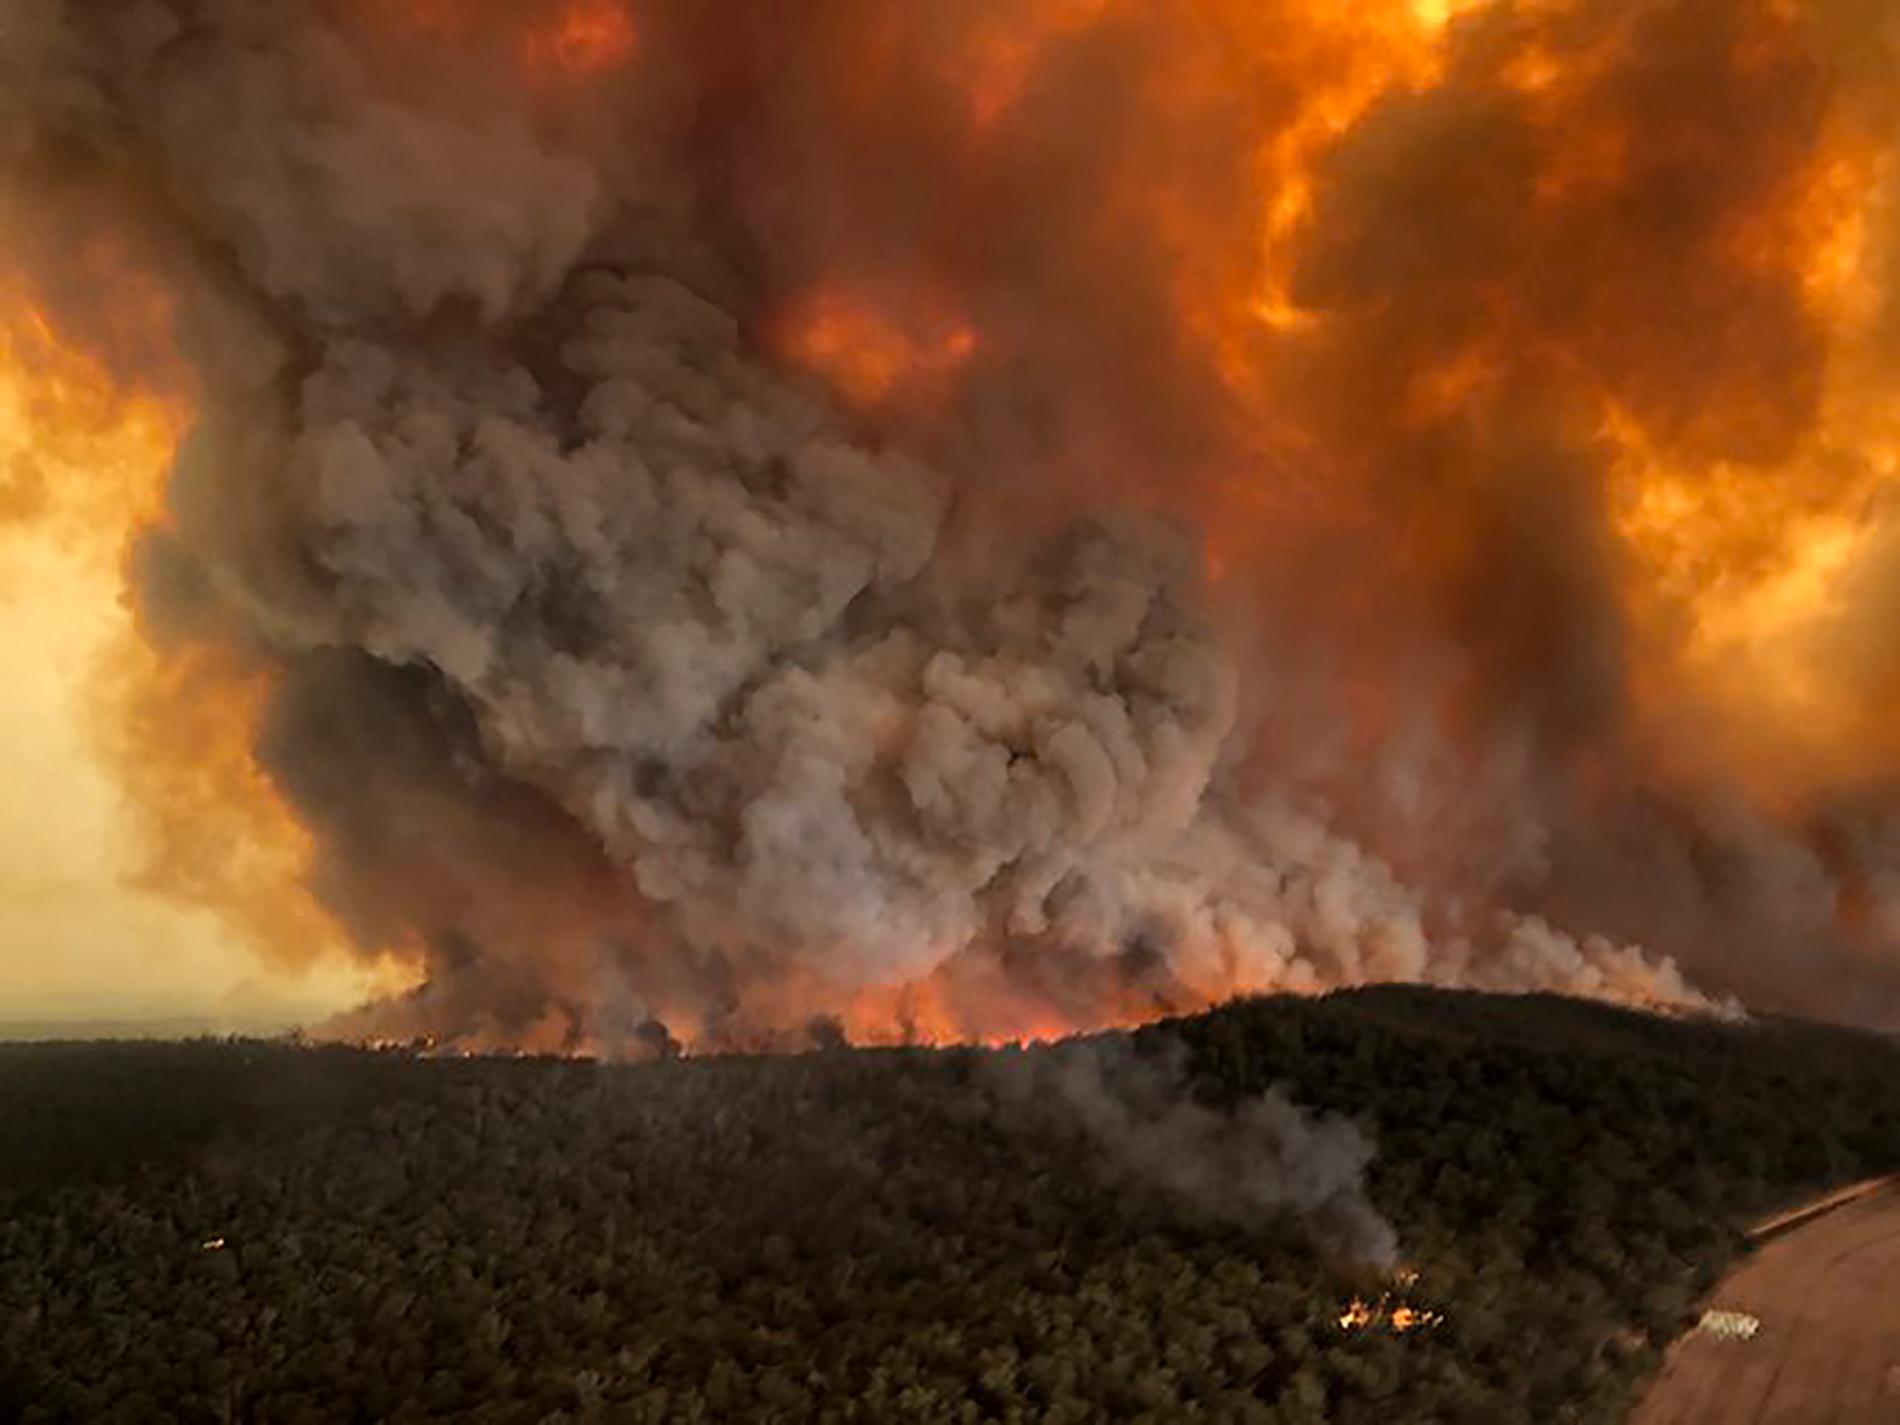 Fem miljoner hektar mark har brunnit sedan bränderna startade i slutet av september.